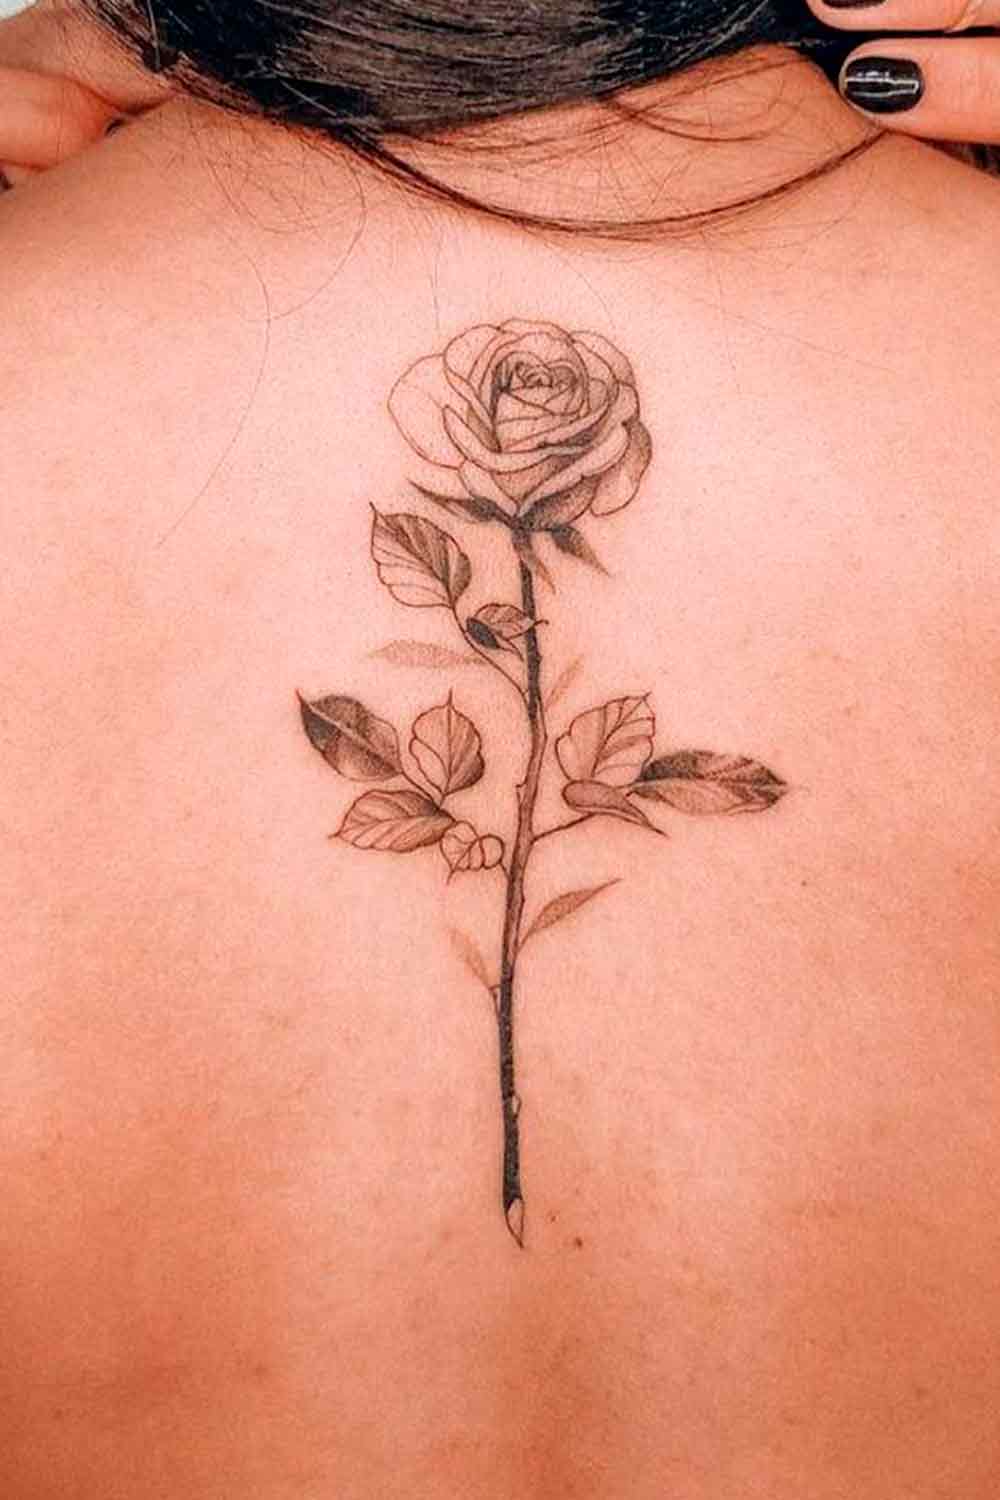 tatuagens-femininas-nas-costas-8-1 